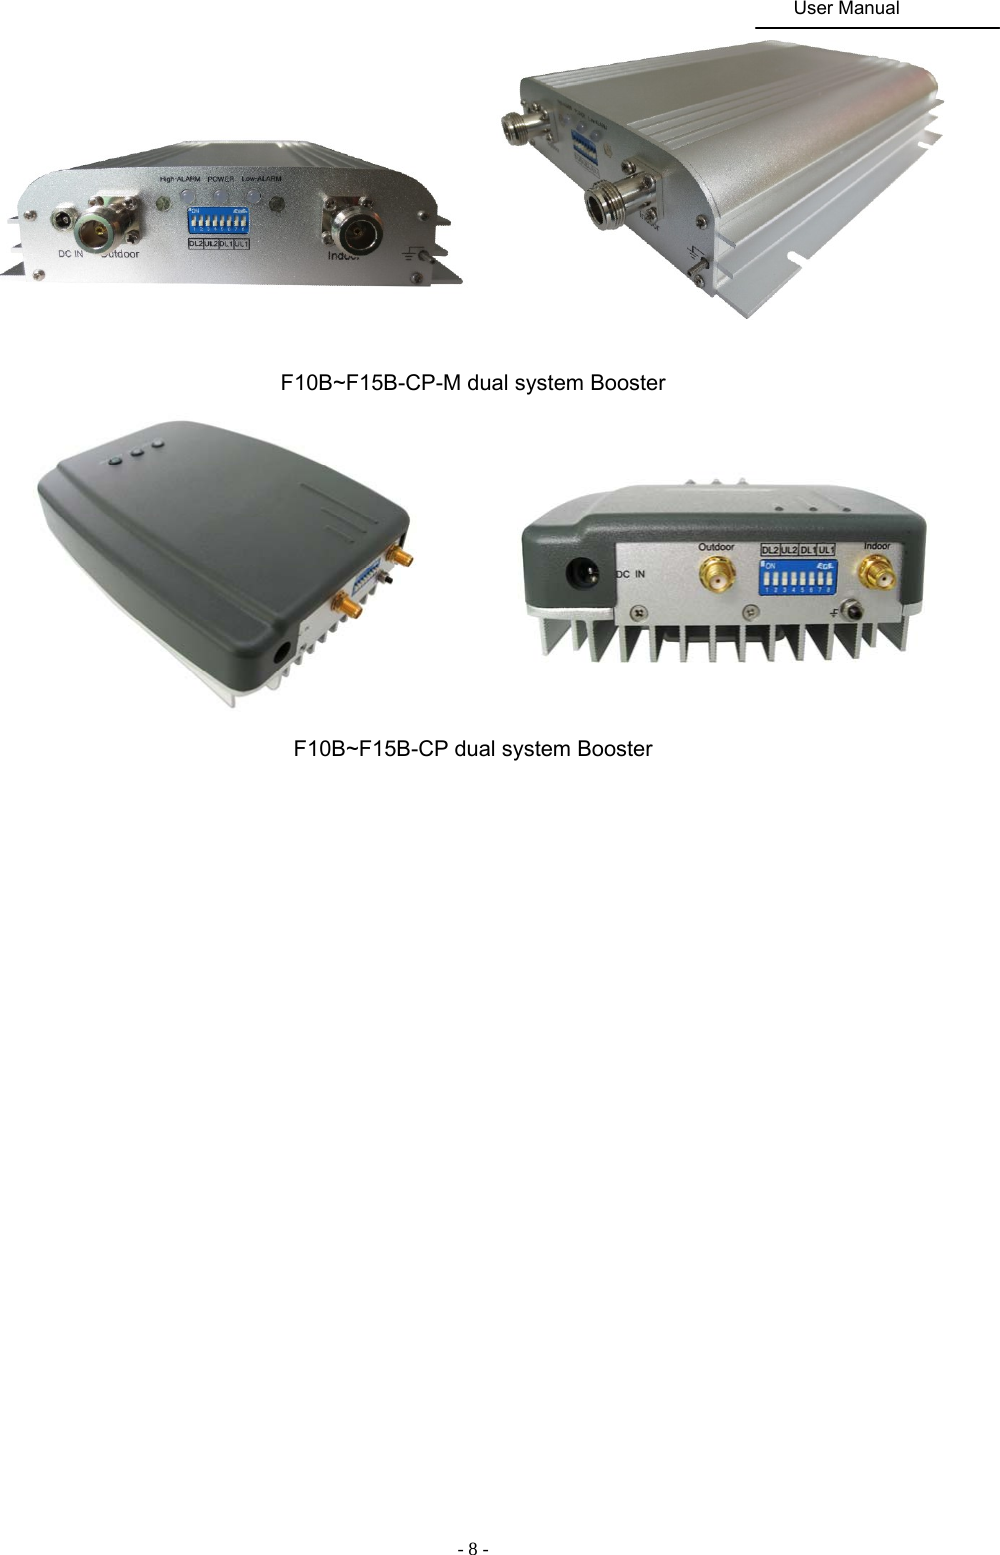                                                                                               User Manual  - 8 -     F10B~F15B-CP-M dual system Booster           F10B~F15B-CP dual system Booster                                